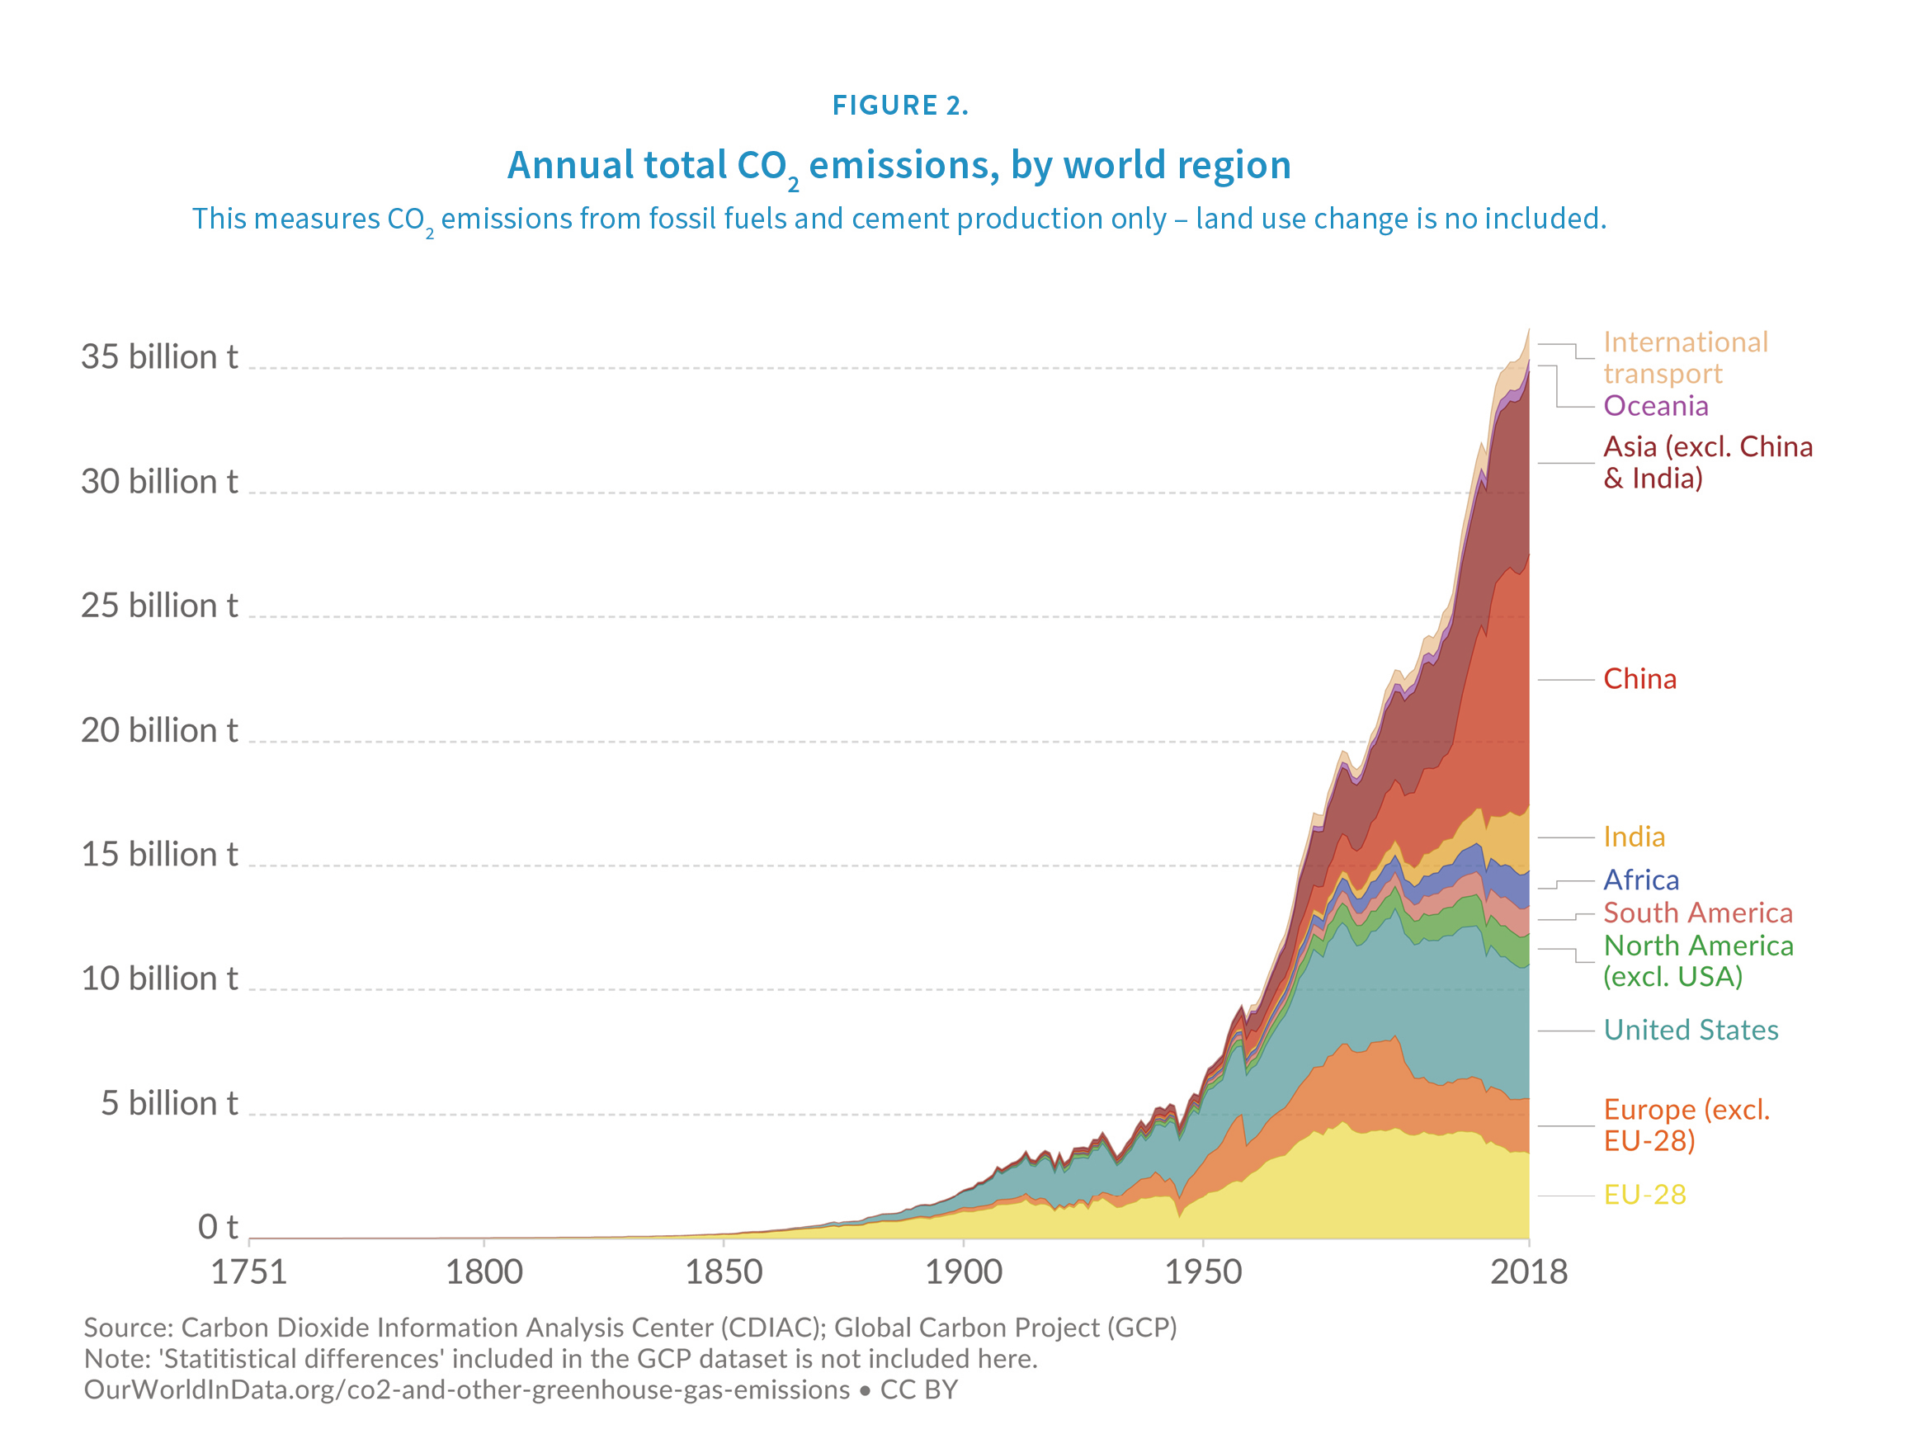 Annual Co2 emissions by world region, RGB